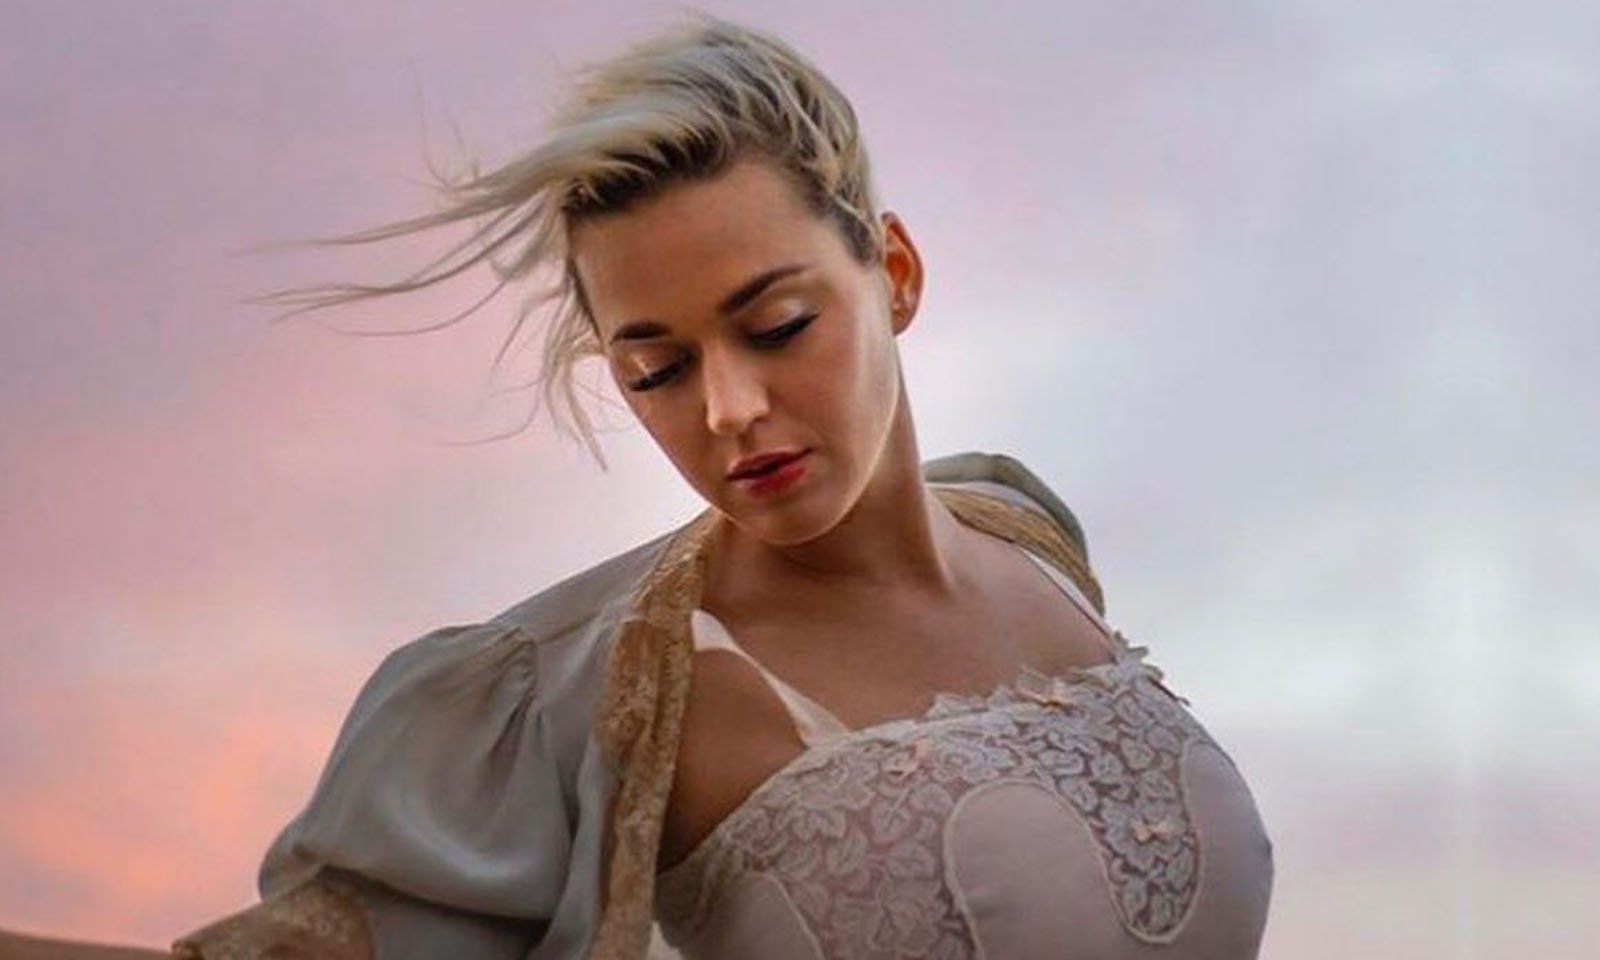 Katy Perry revela que pensou em suicídio após fase difícil na carreira e término com Orlando Bloom